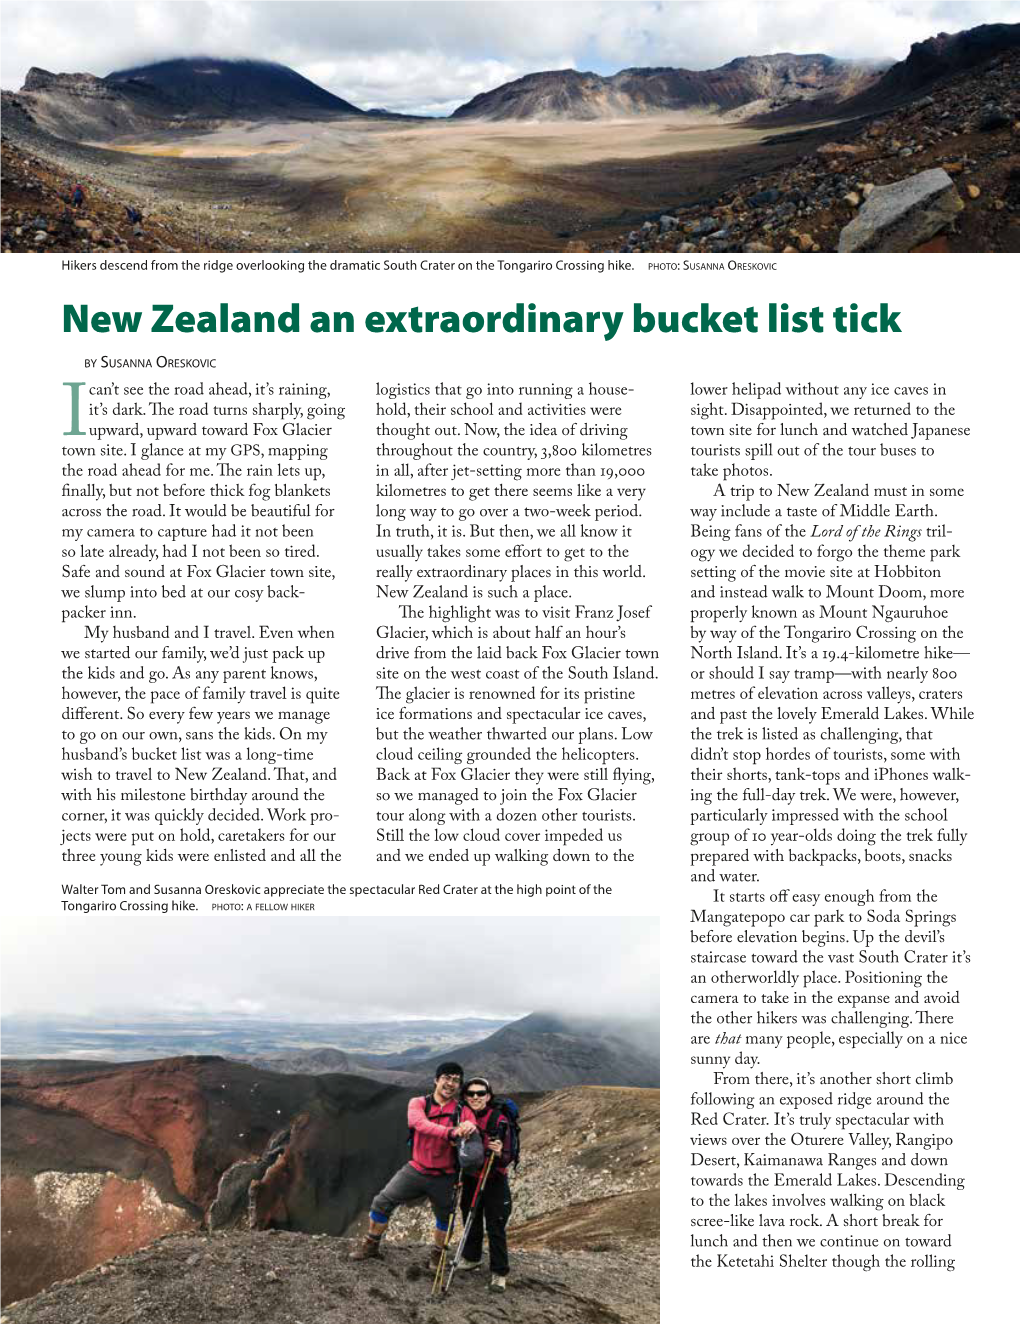 New Zealand an Extraordinary Bucket List Tick